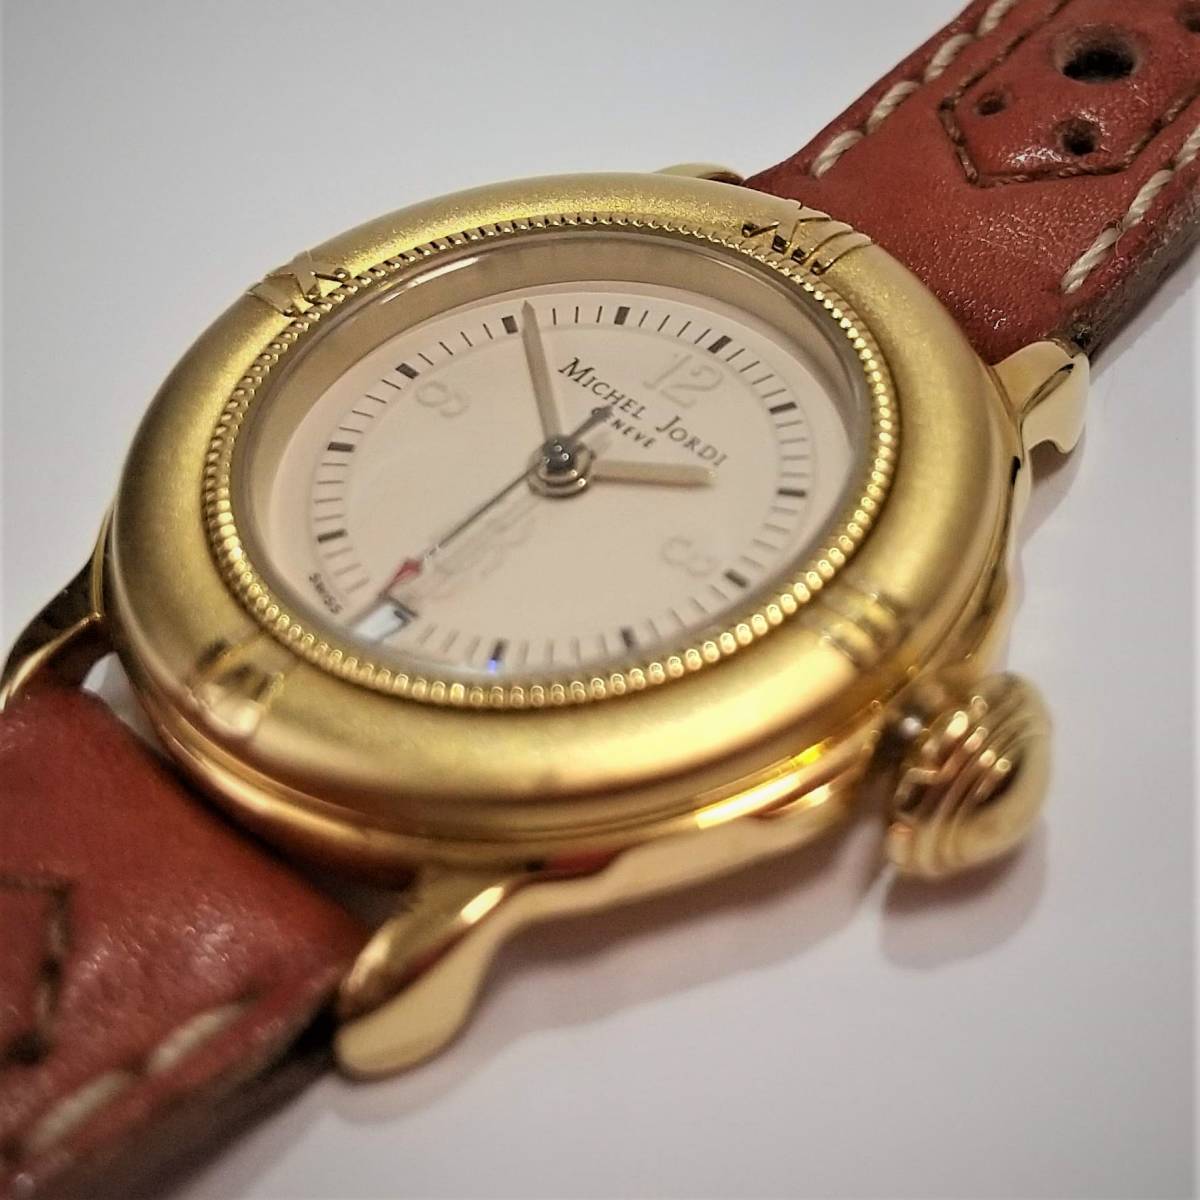 全国宅配無料 スイス製腕時計・MICEHL JORDI・ミシェルジョルディー